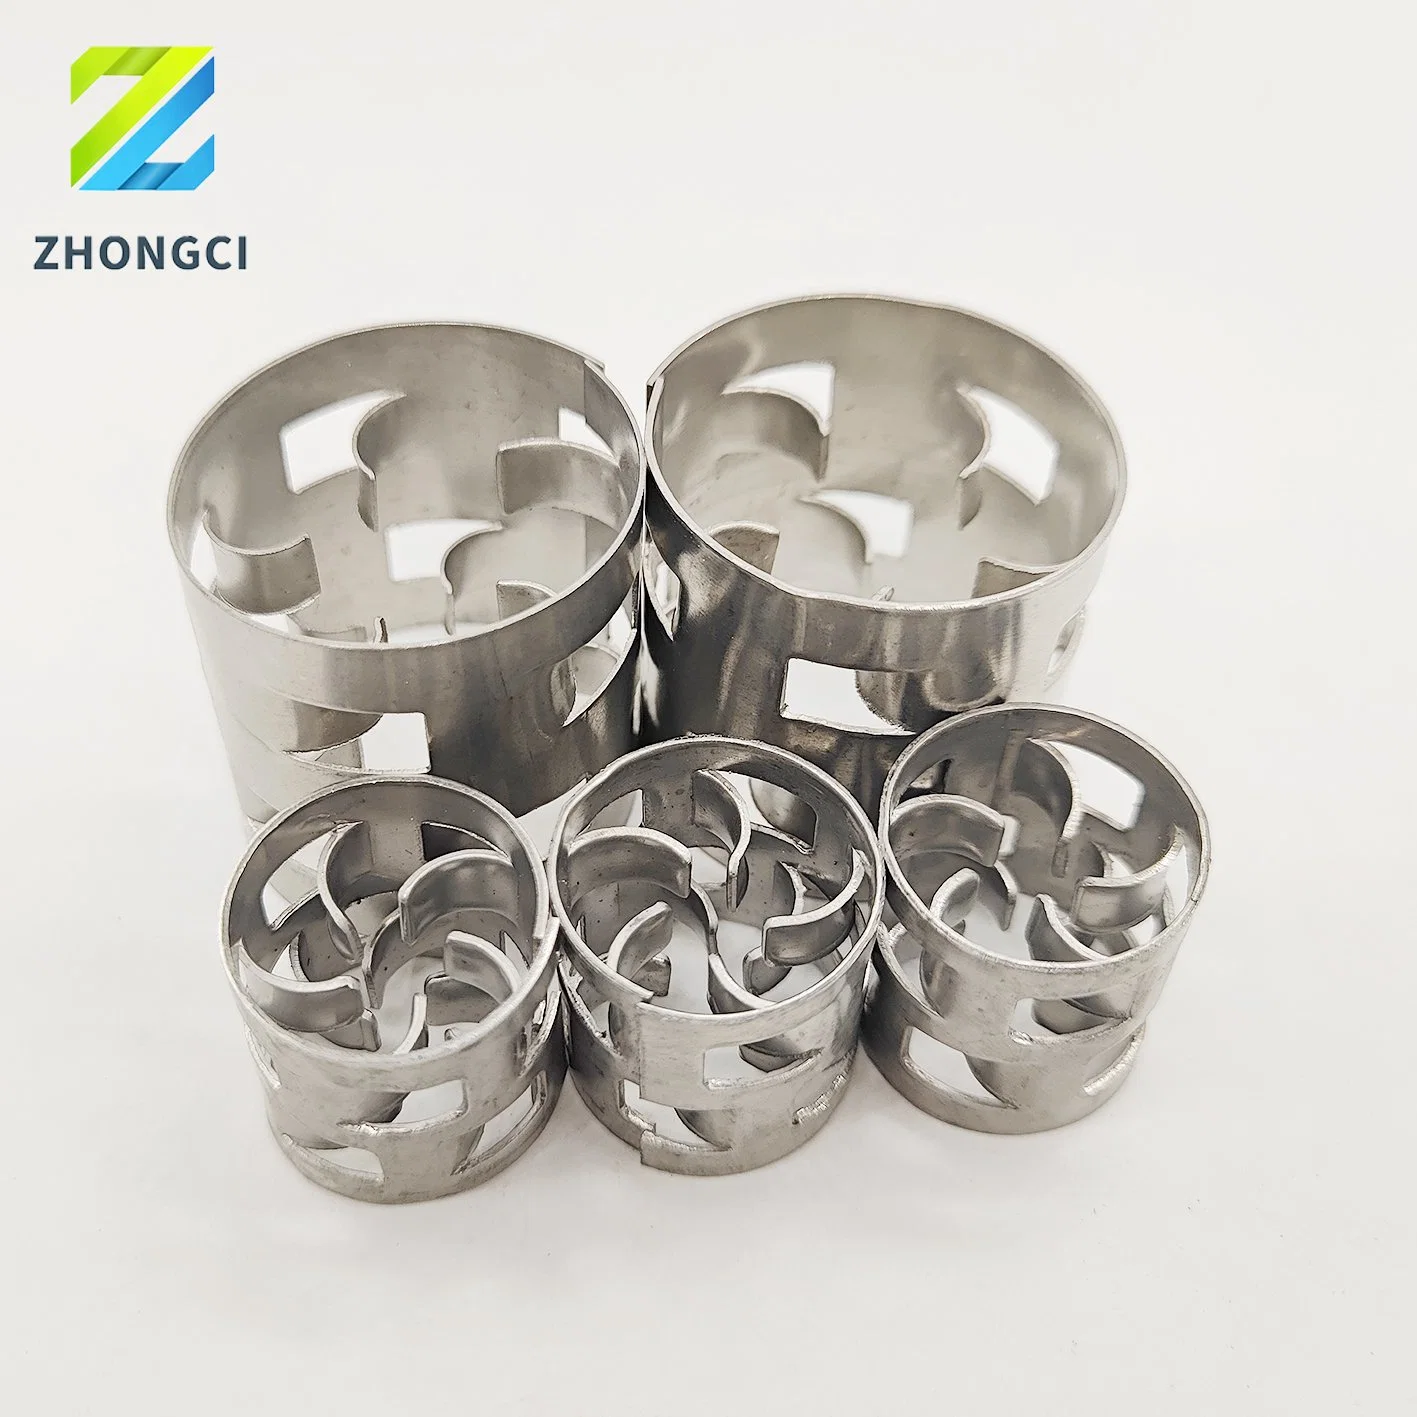 Zhongci Metall zufällige Verpackung Pall Ring für chemische Turm